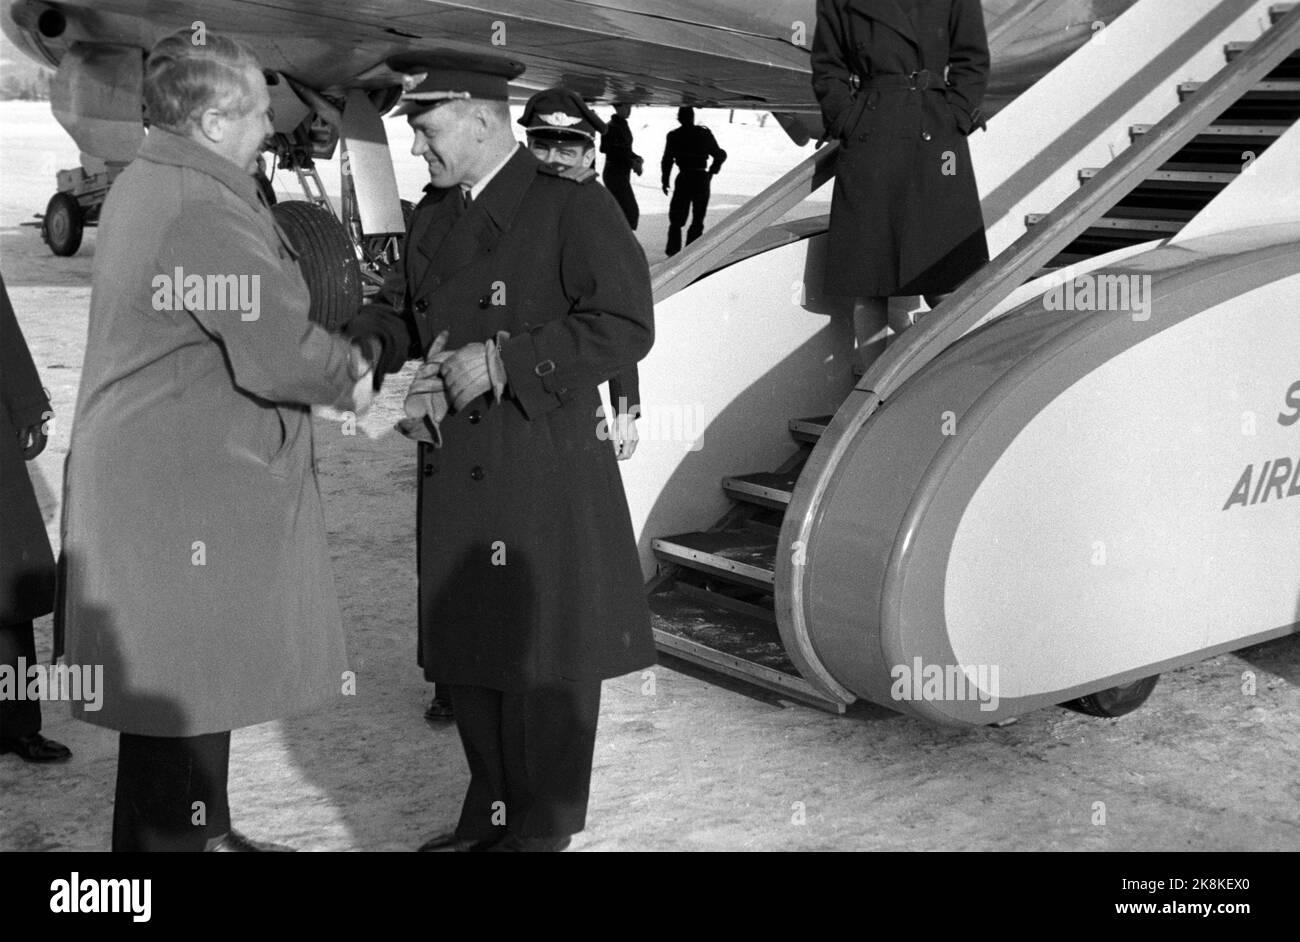 Oslo 19470222: SAS's erstes richtiges Atlantic-Flugzeug, ein Douglas DC-4 Skymaster mit Name und Registrationsnummer „Nordan“, die SE-BBA, eröffnet die skandinavische Flugroute nach Südamerika. Der Pilot wünscht Viel Glück. Foto: NTB / NTB Stockfoto